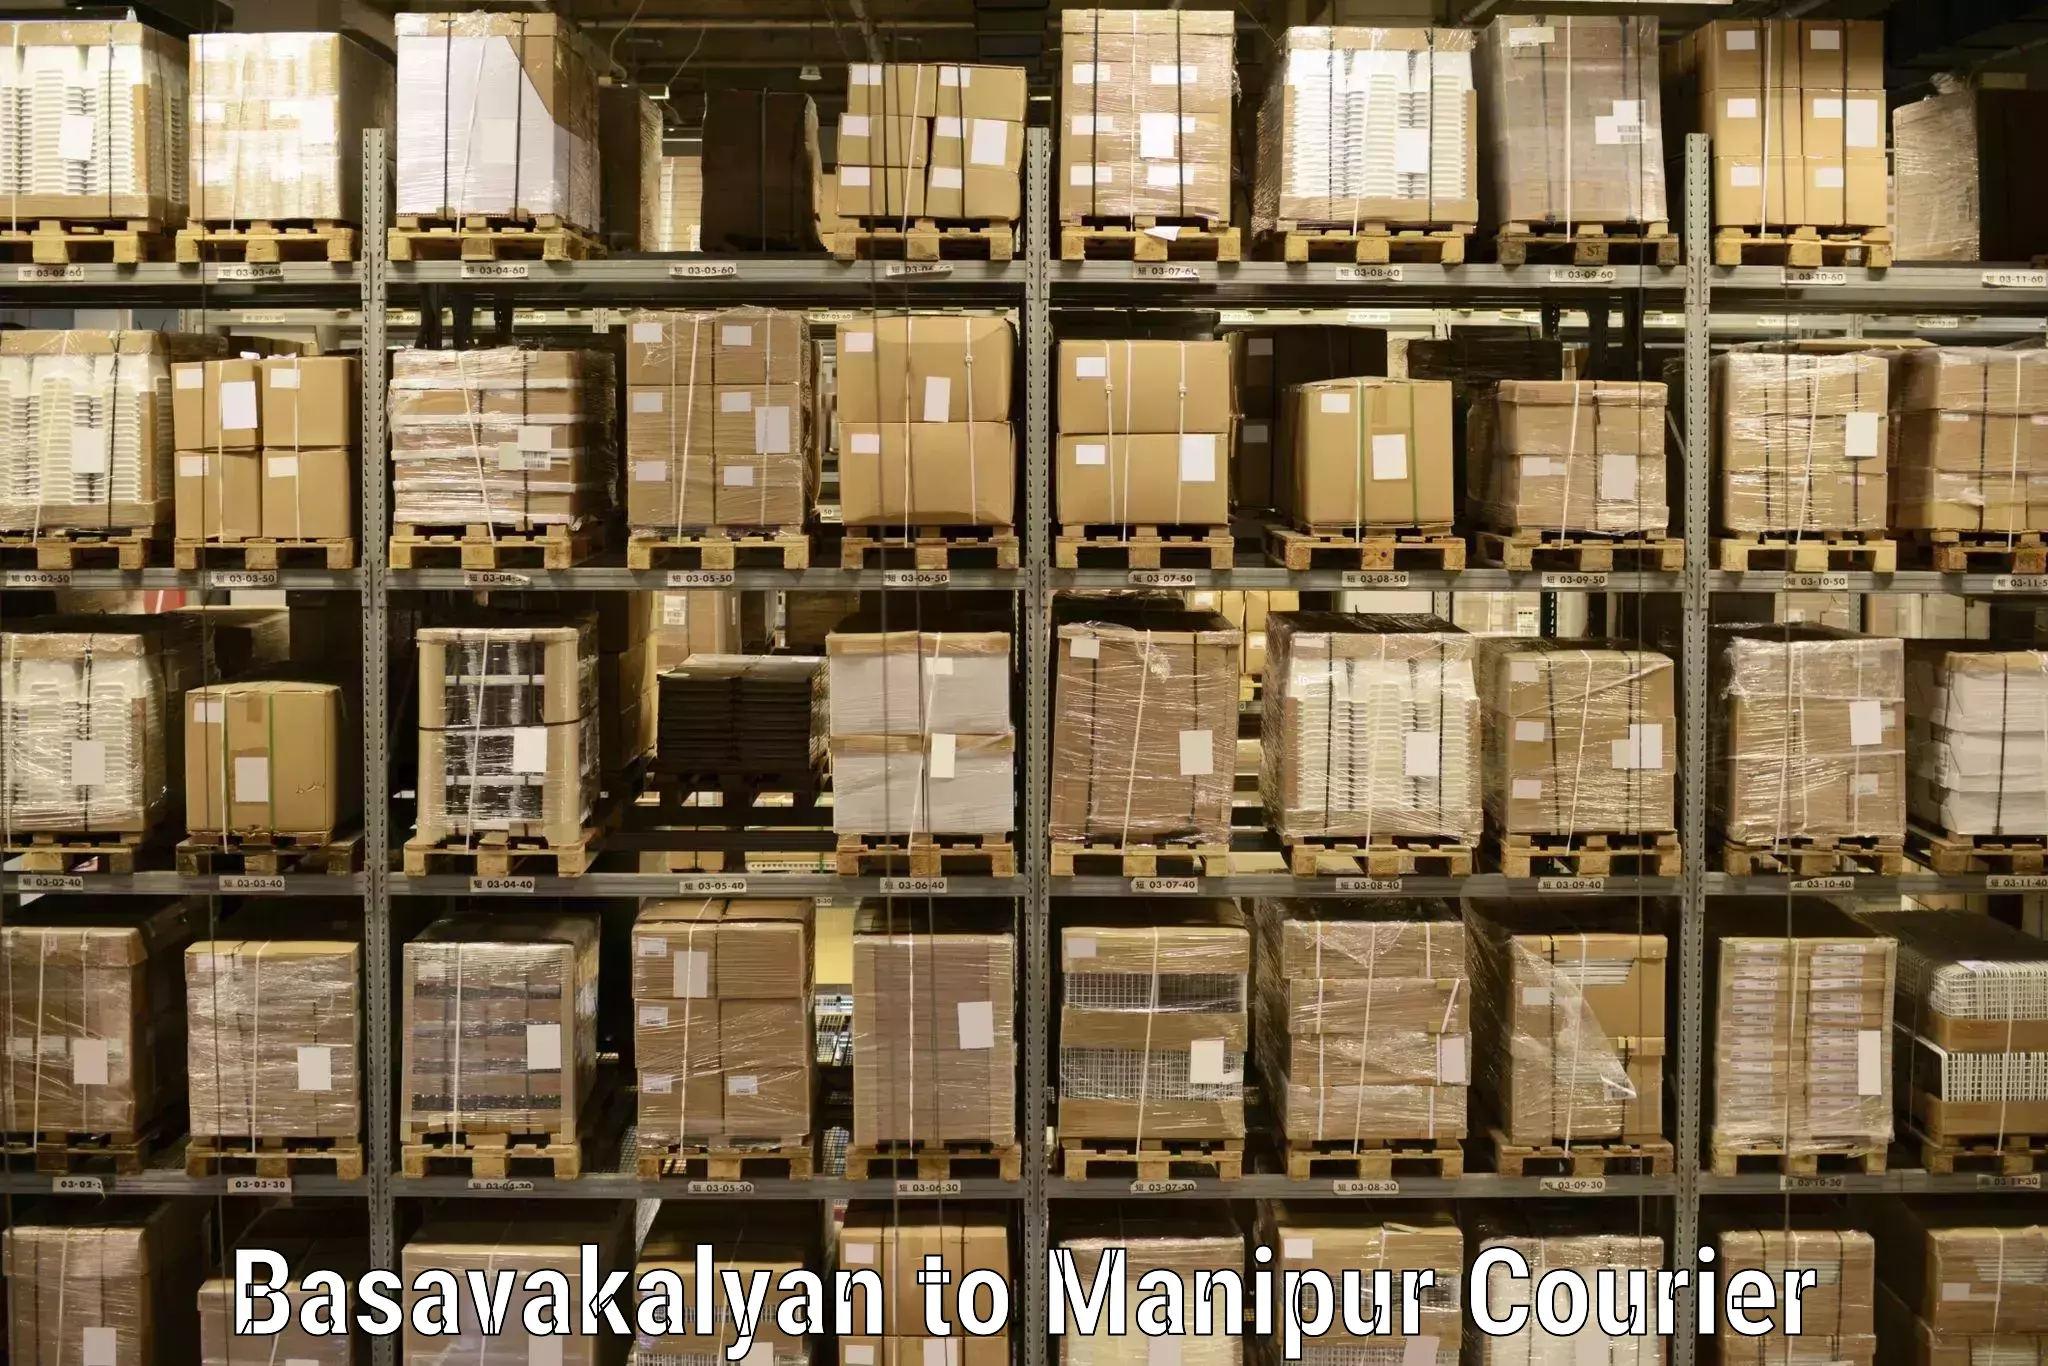 Speedy delivery service Basavakalyan to Manipur